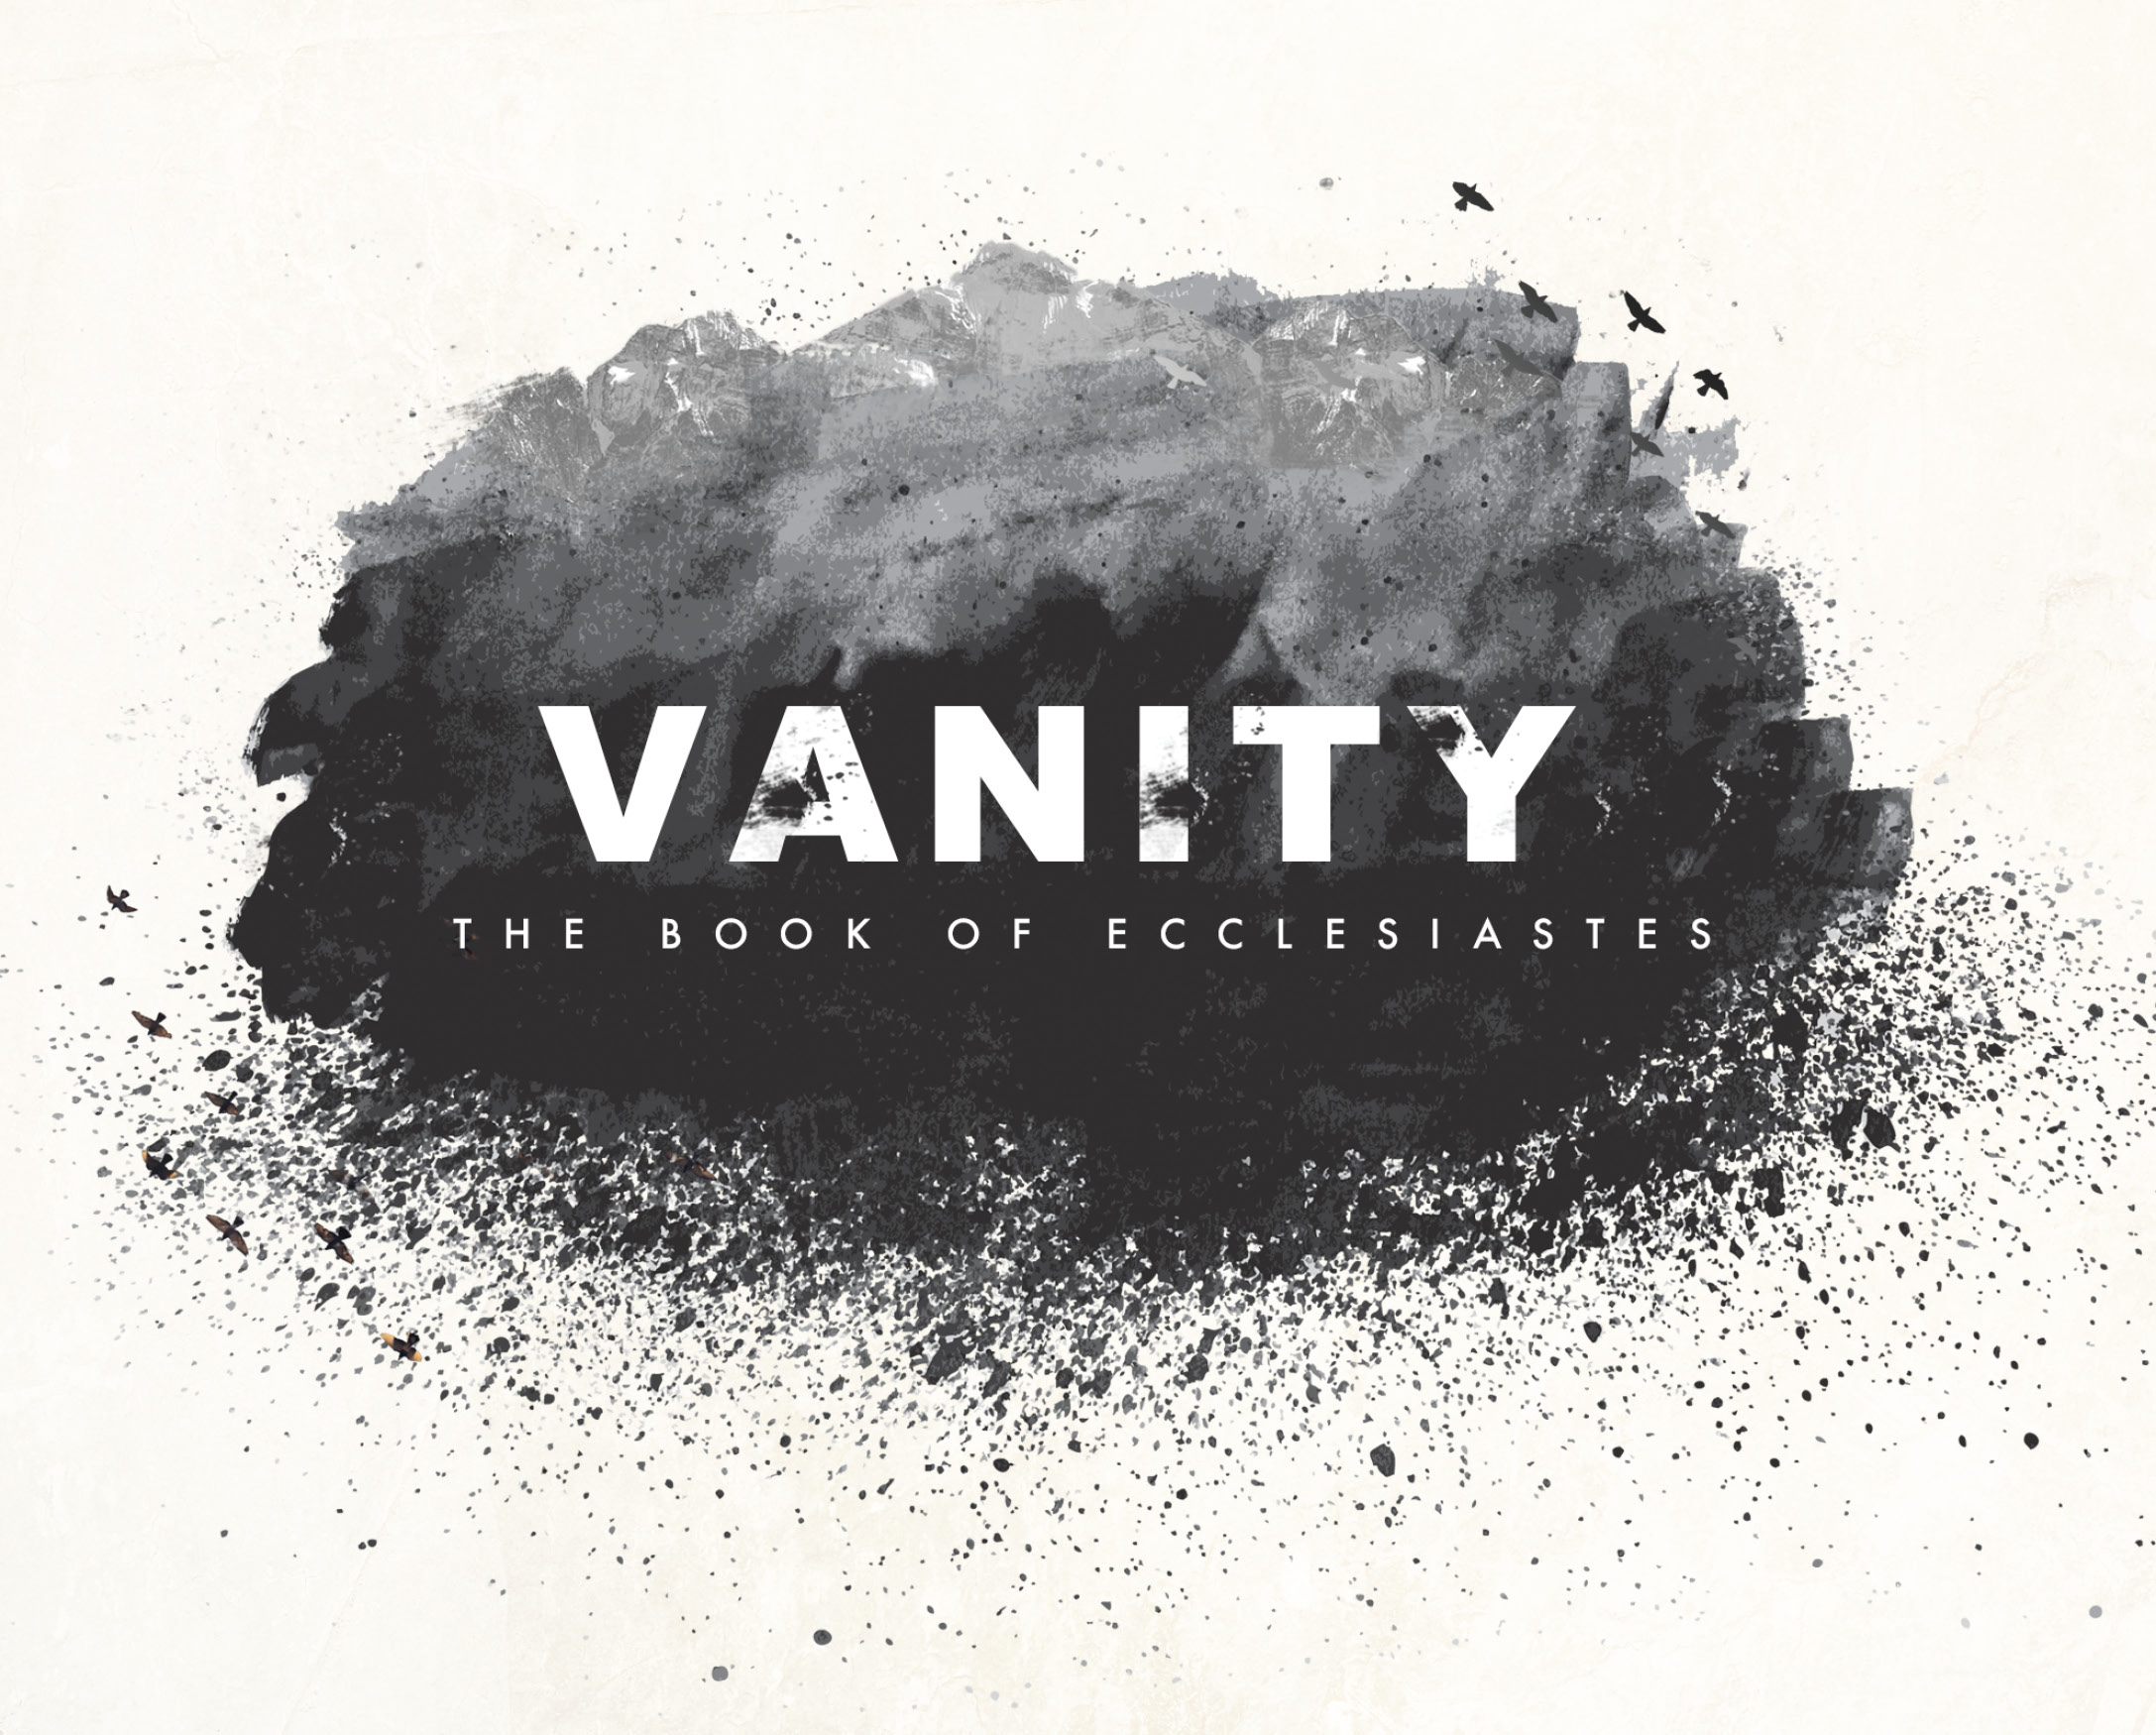 Vanity: Worship God, fools!